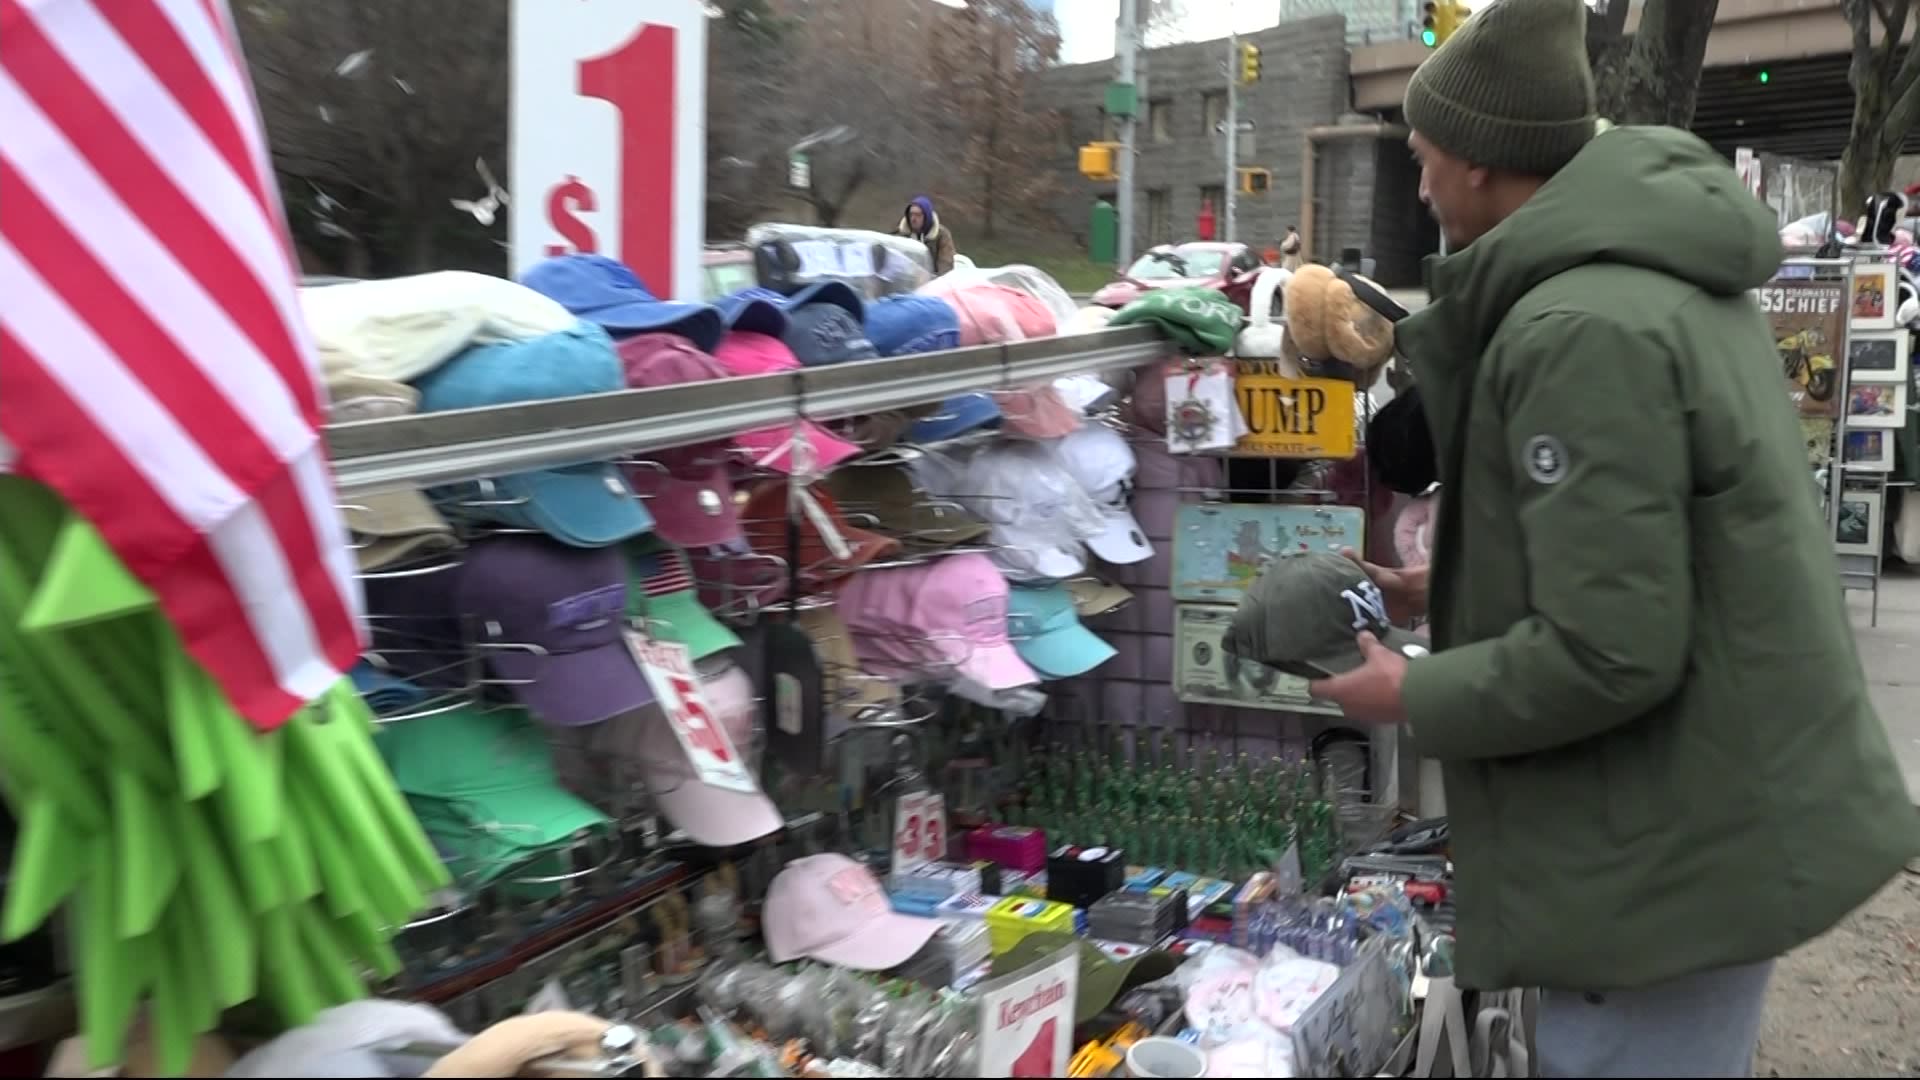 上周搬到该地区的纽约摊贩被禁止进入DUMBO